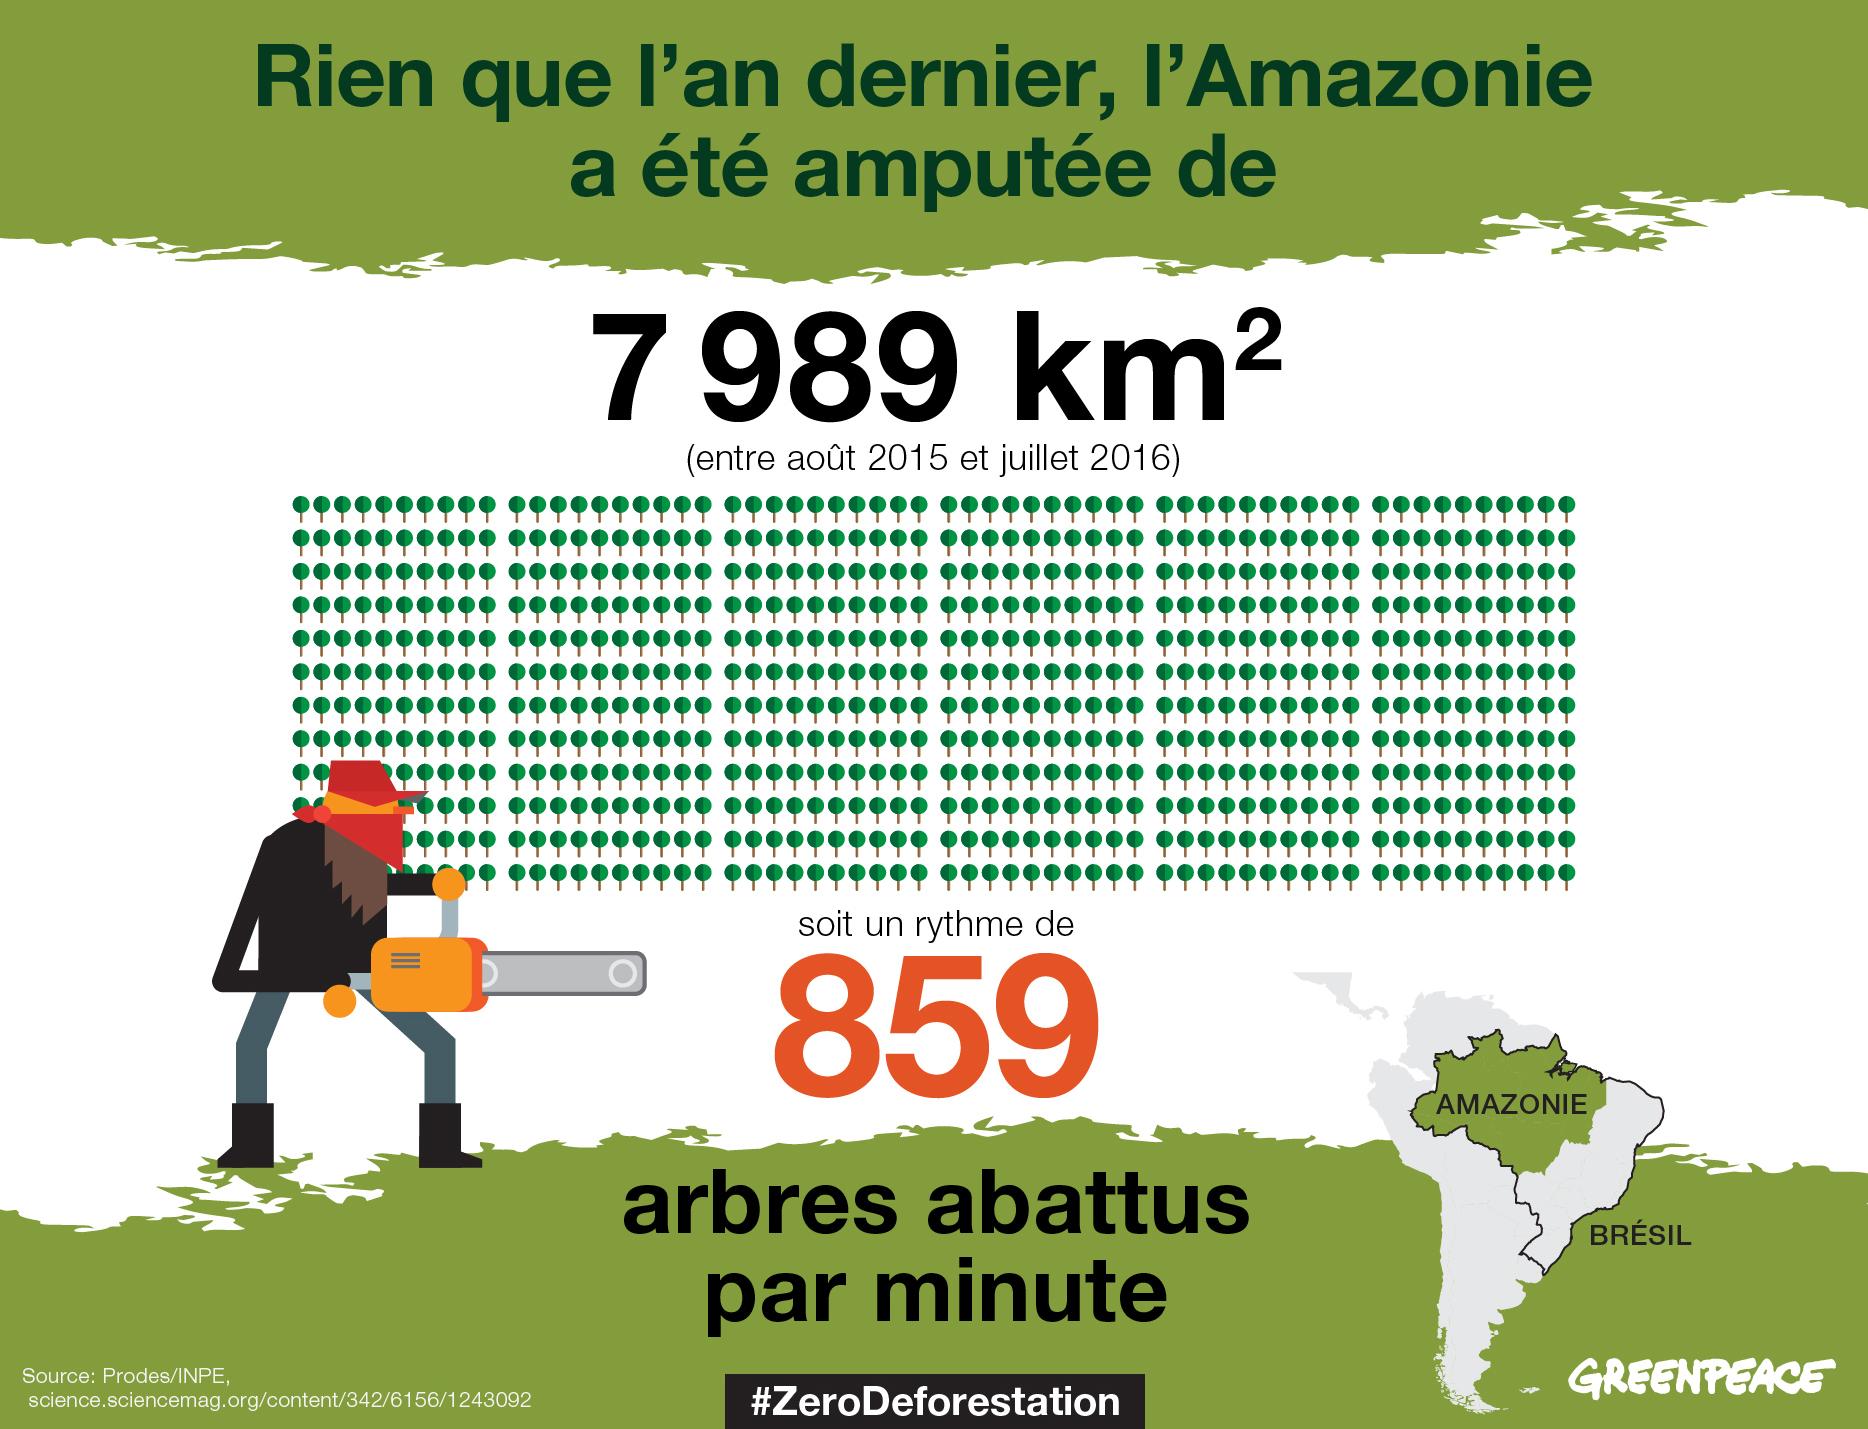 Amazonie 451 Millions D Arbres Abattus L An Dernier Greenpeace France